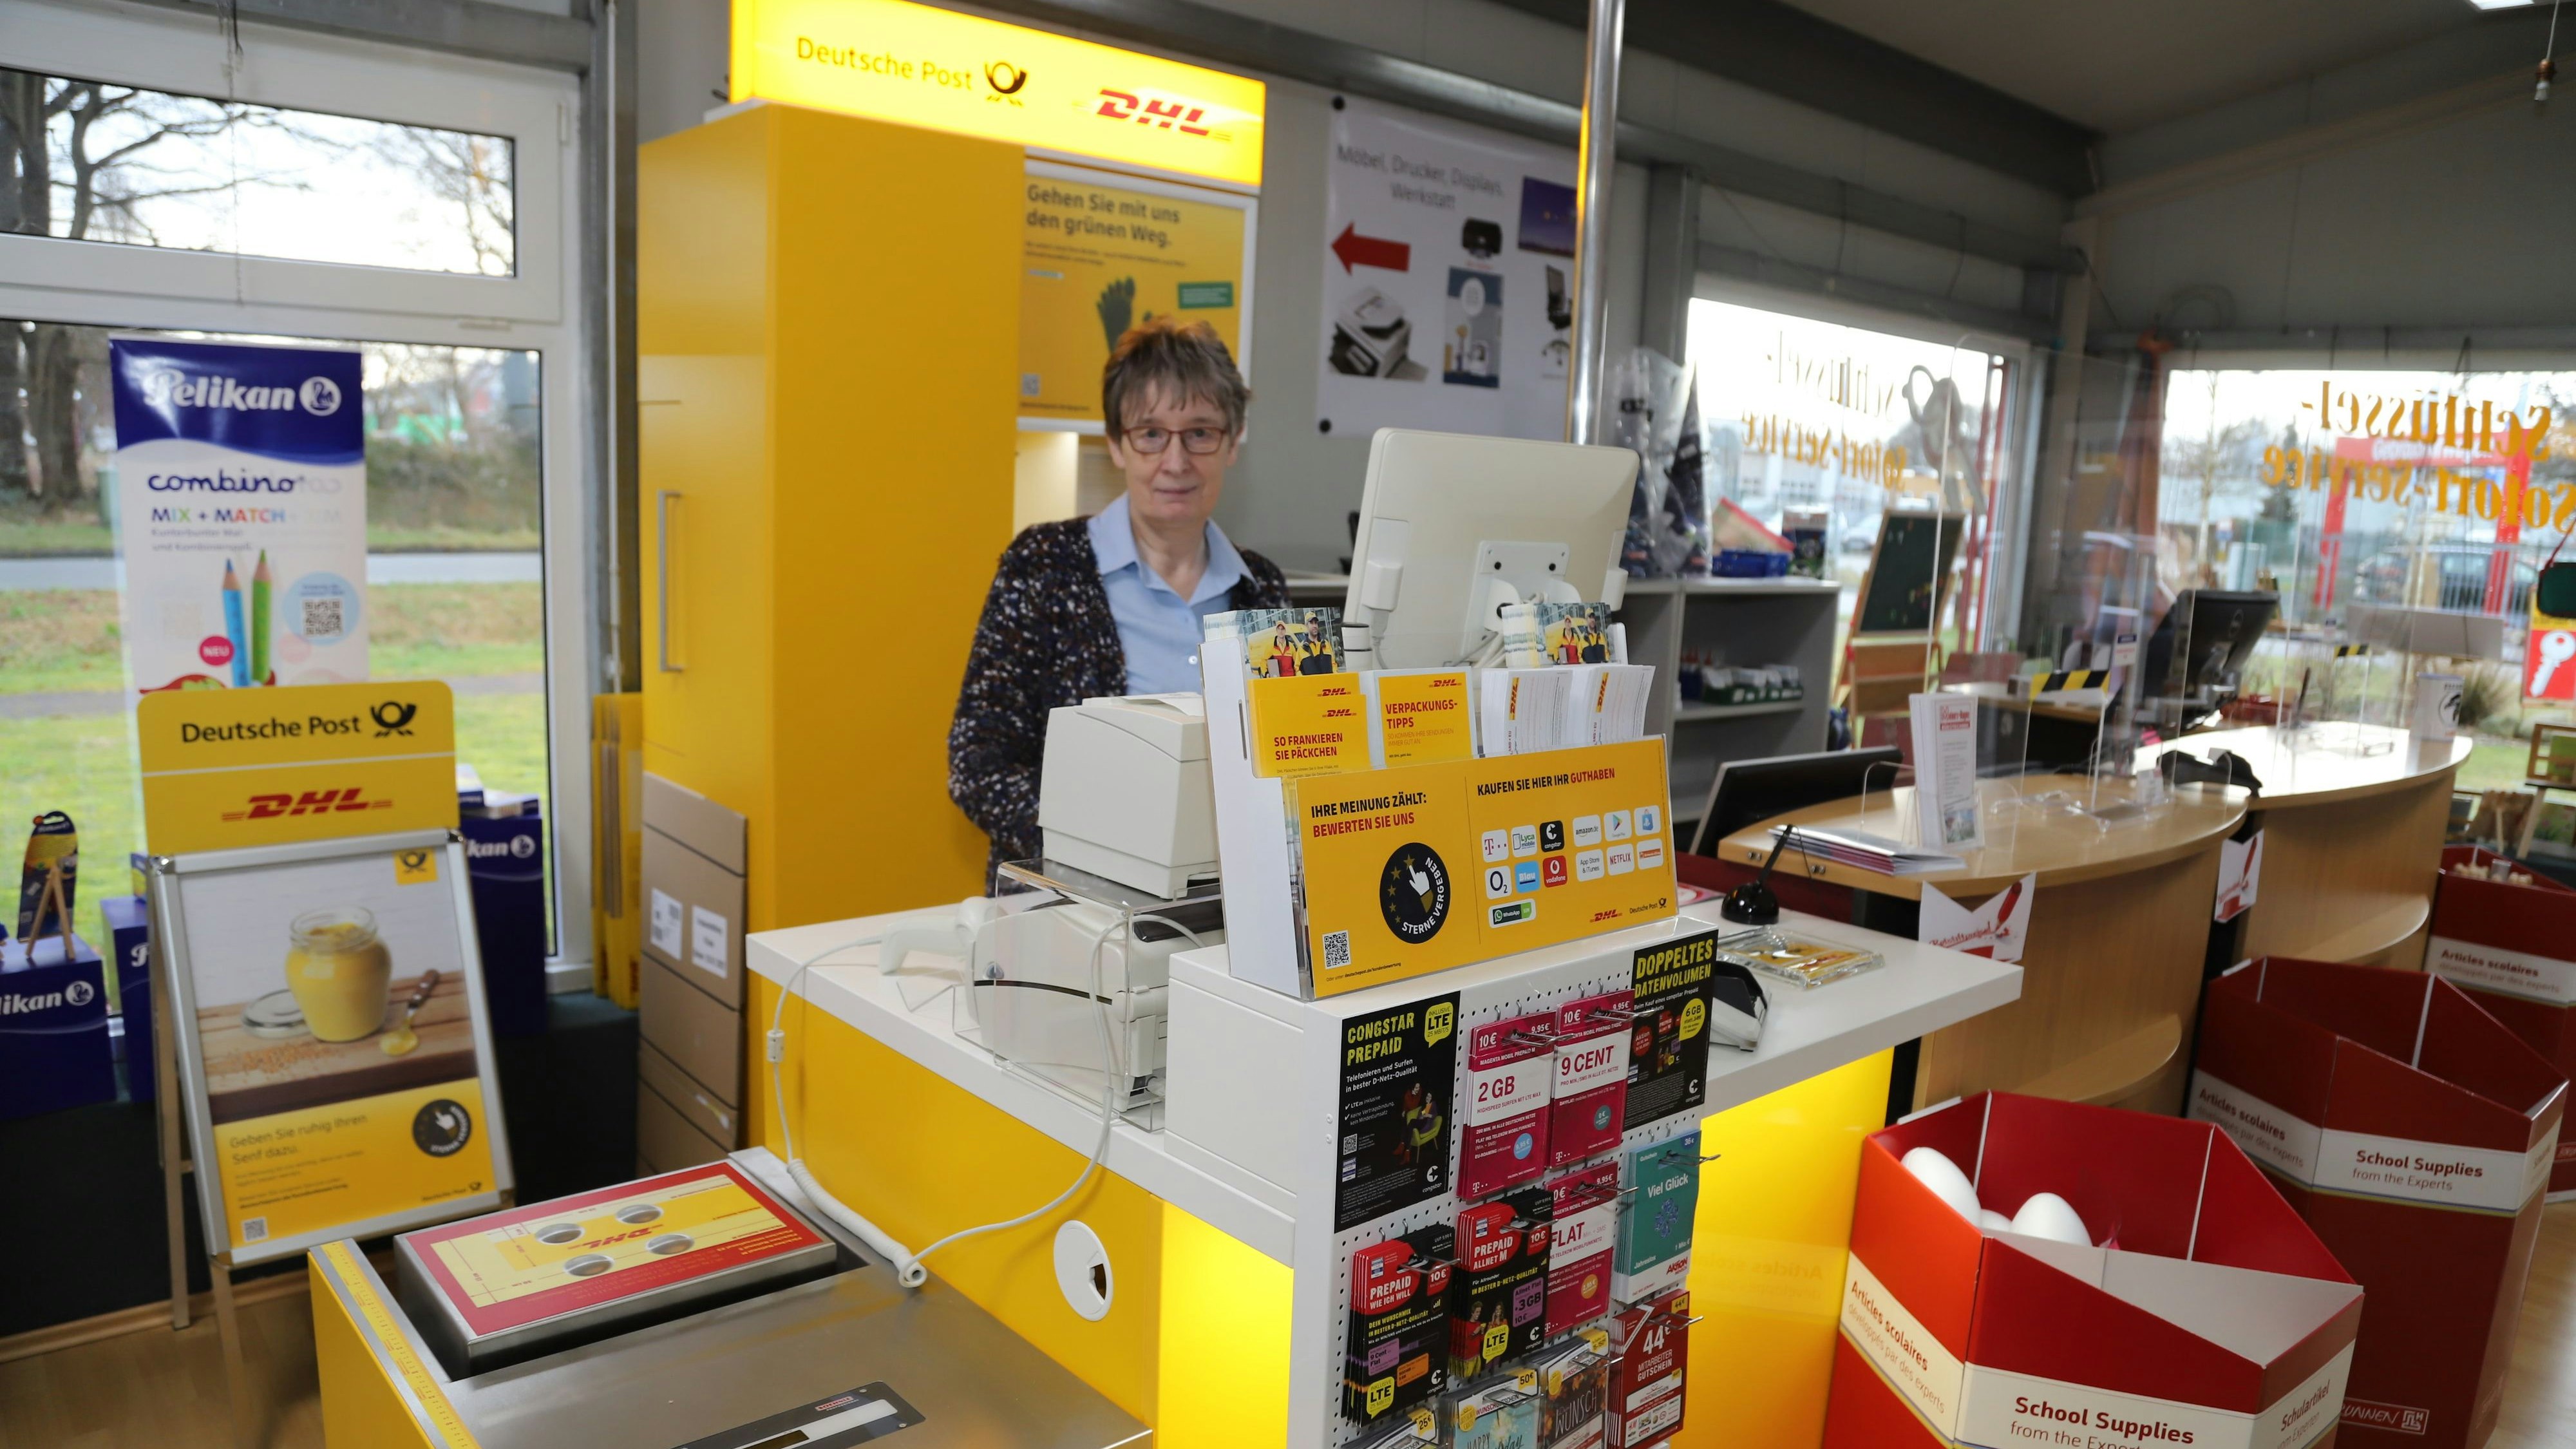 Bei Bürotechnik Meiners-Hagen hat die Postfiliale Einzug gehalten. Marlies Meiners-Hagen bietet am neuen Tresen die Angebot der Deutschen Post an. Foto: Passmann